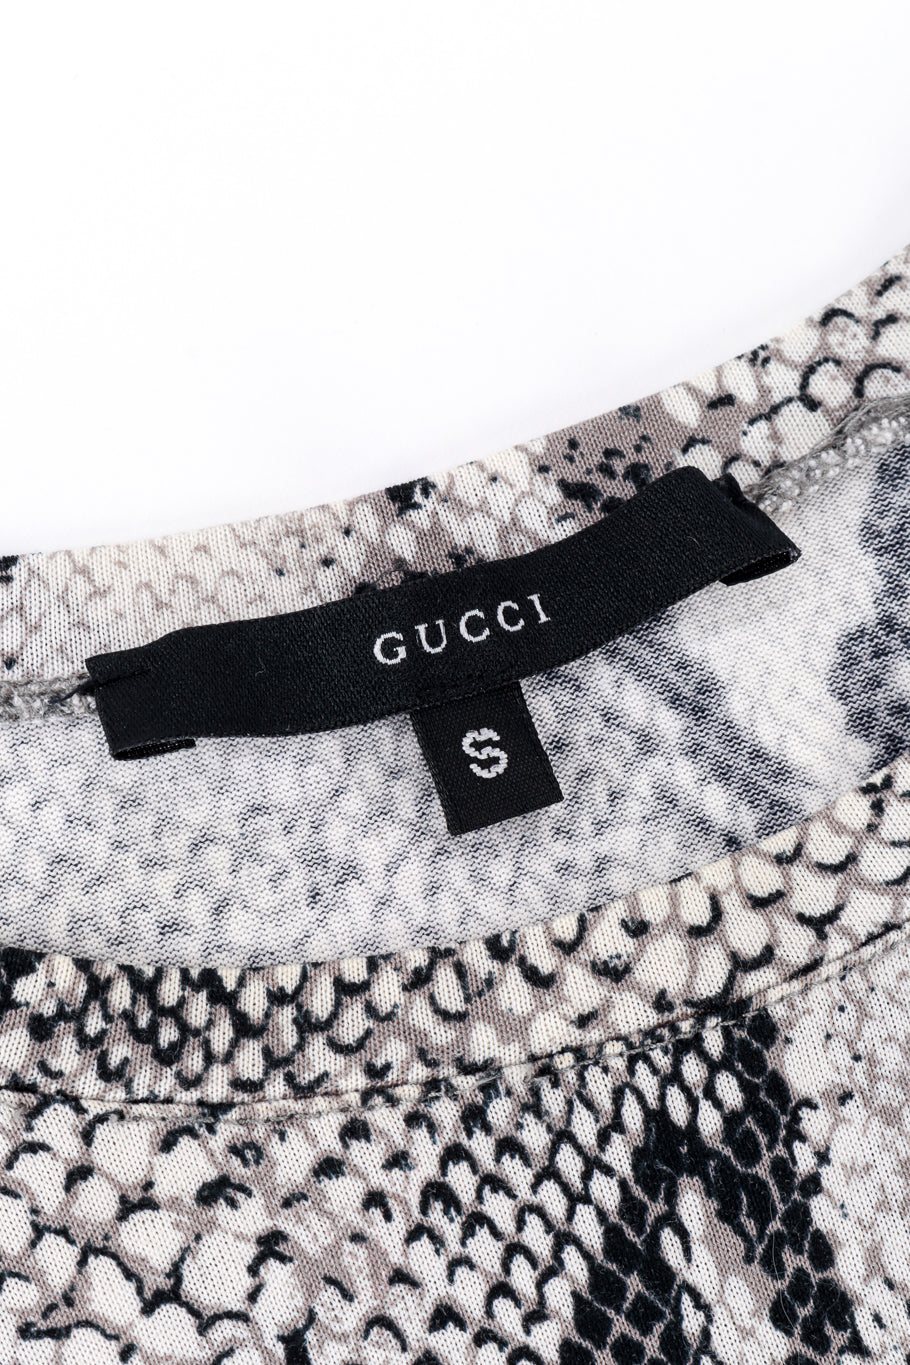 Gucci Snake Print Crop Top signature label @recess la